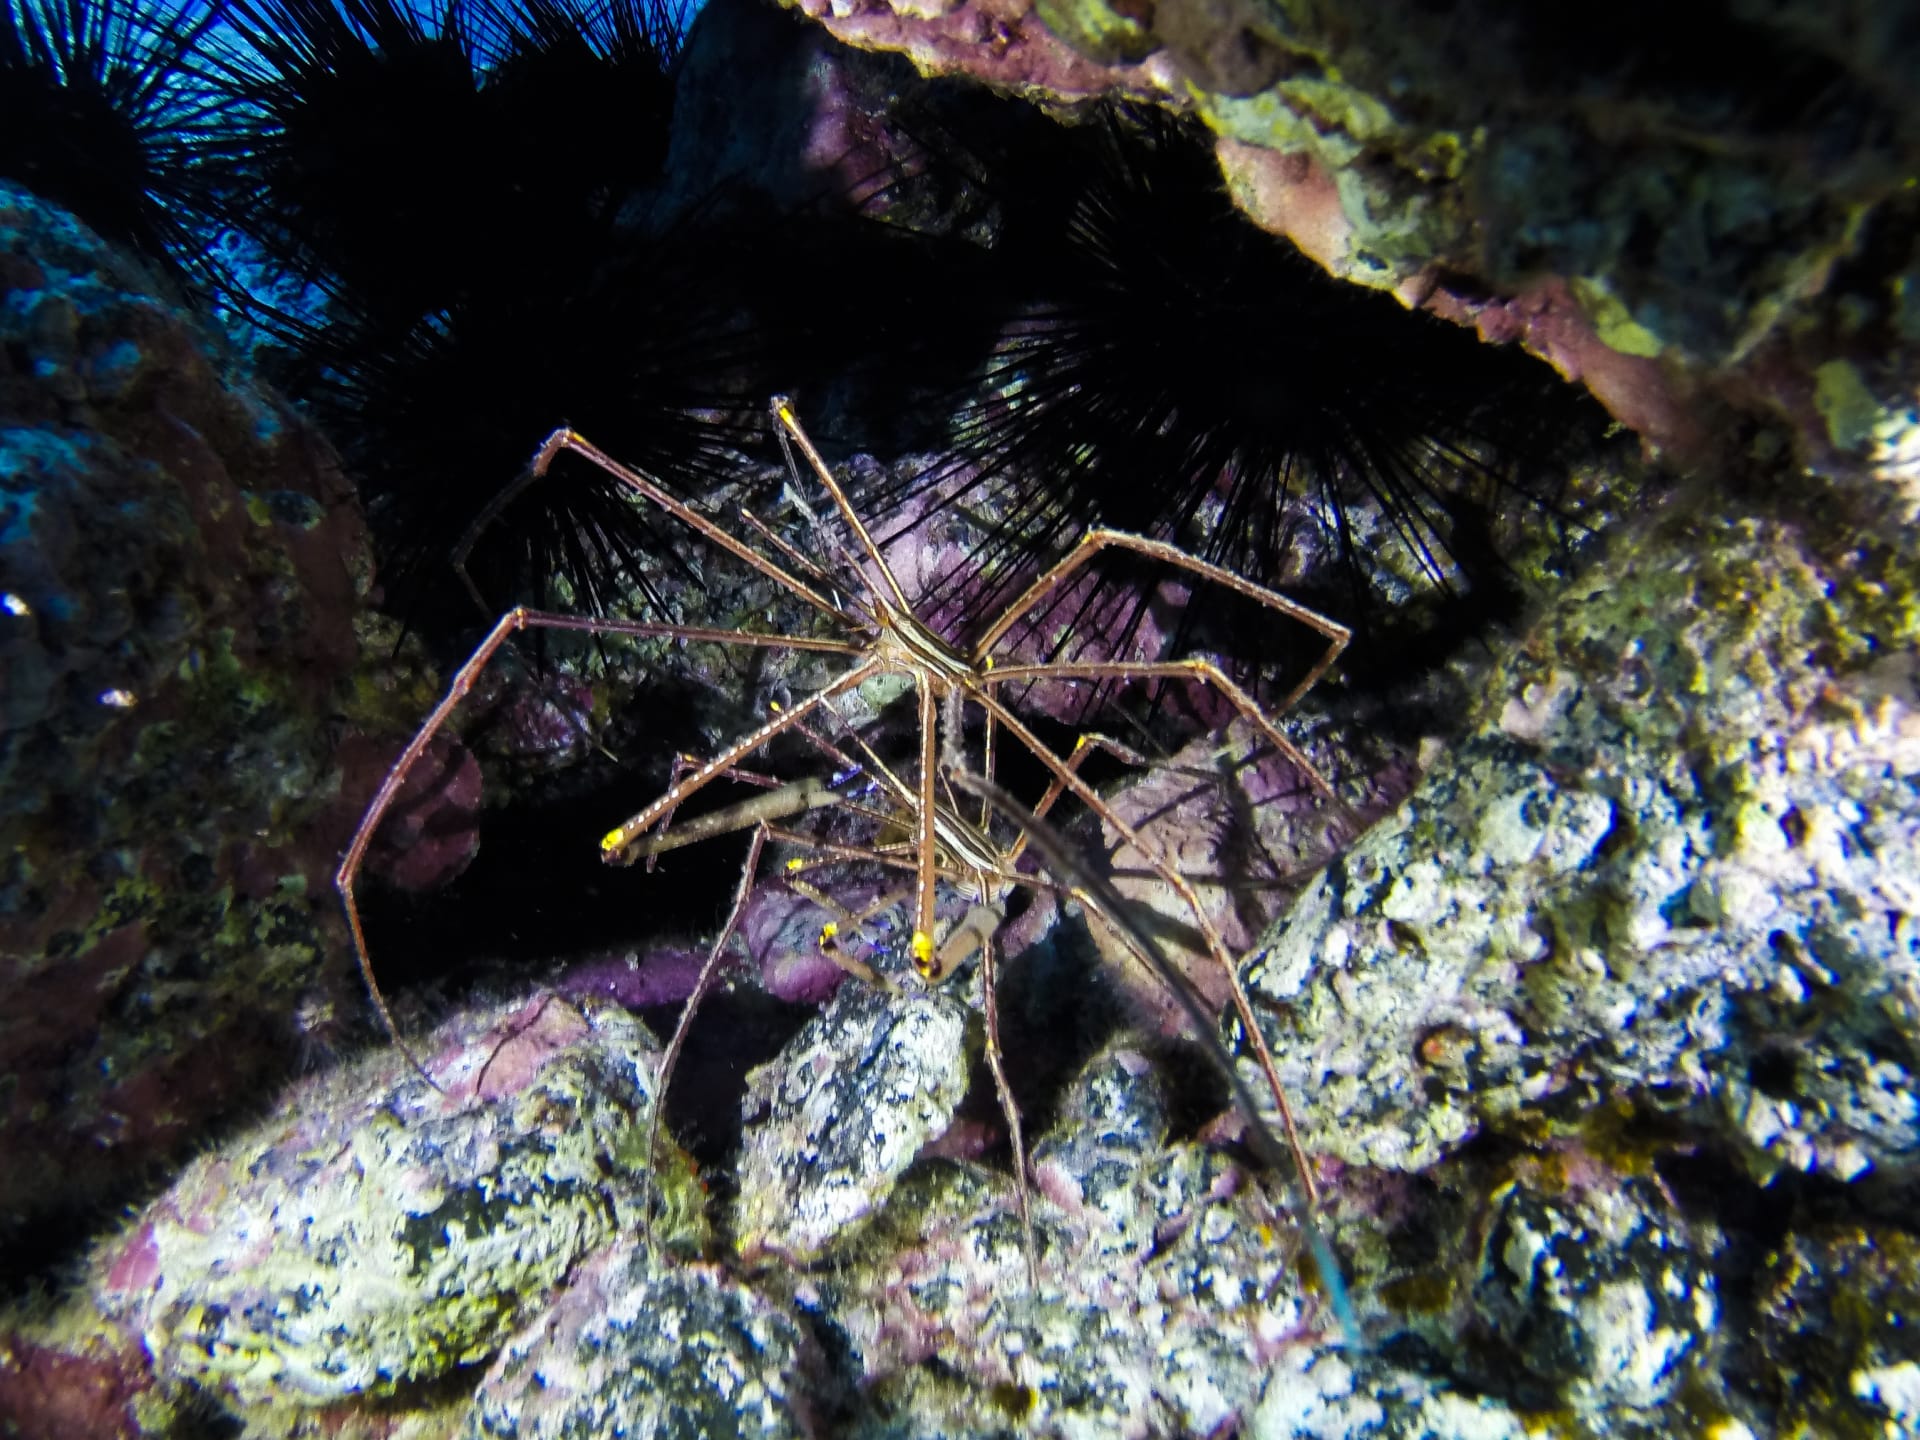 Mořský pavouk připomíná facehuggera